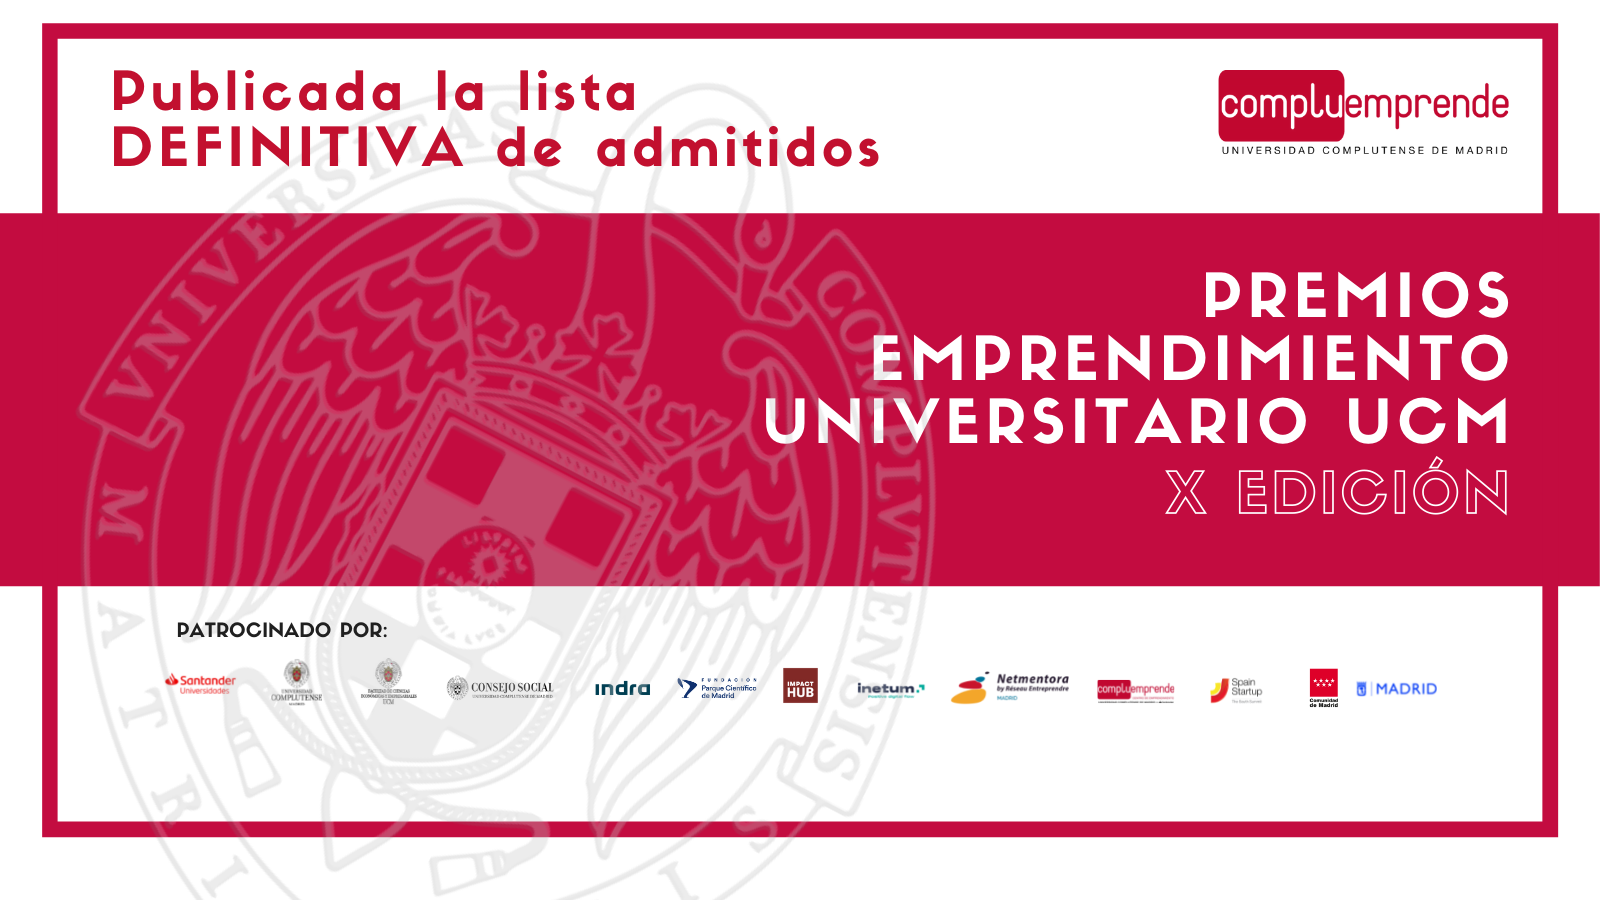 Resolución DEFINITIVA de candidaturas admitidas y excluidas - X Edición Premios Emprendimiento Universitario.